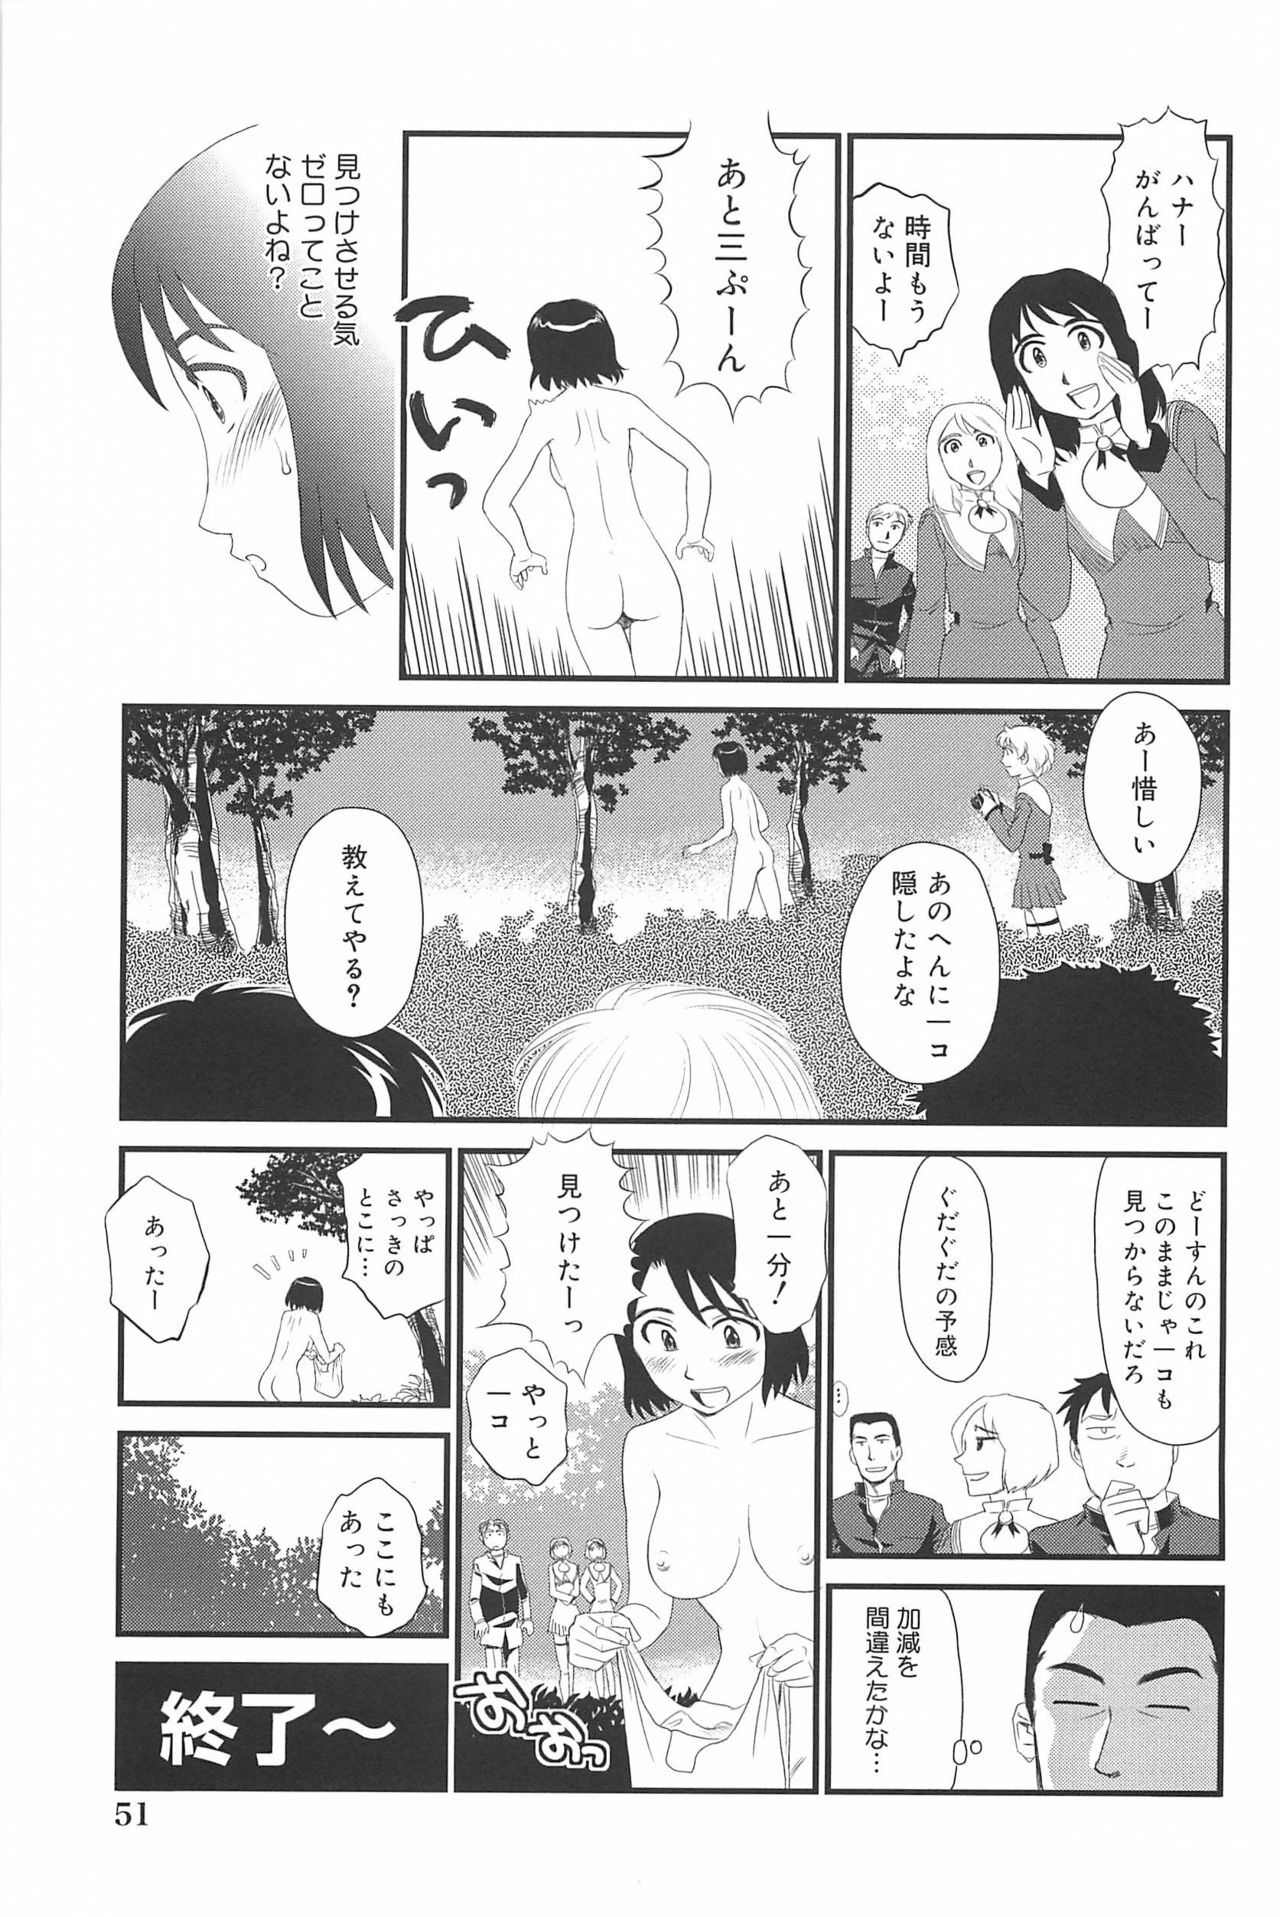 [Suehirogari] Kumo no Michi page 52 full